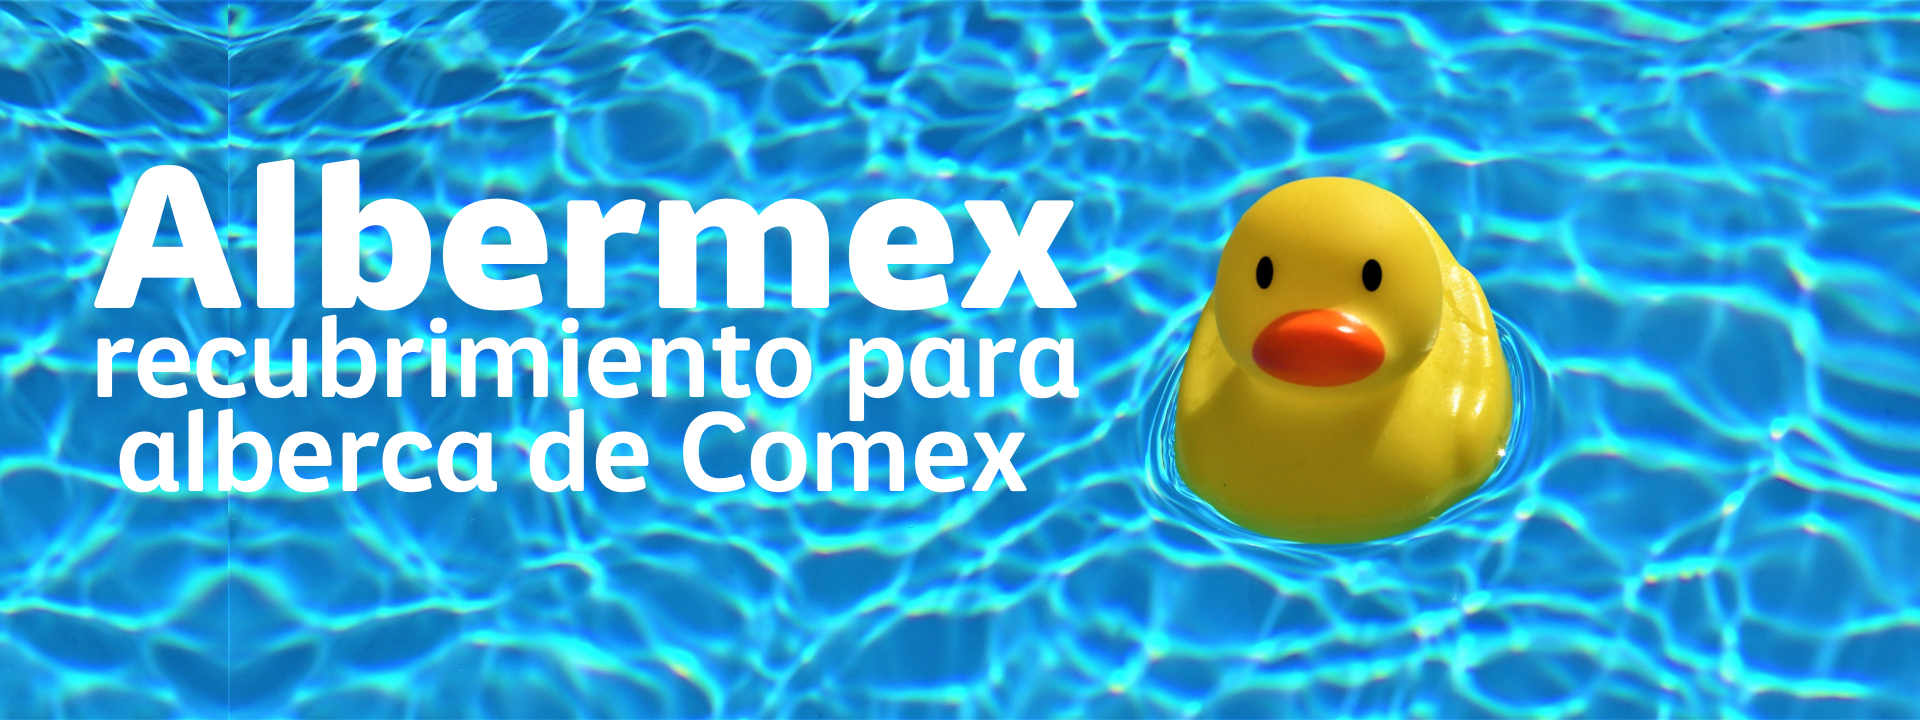 Albermex: recubrimiento para alberca de Comex - Pinpj